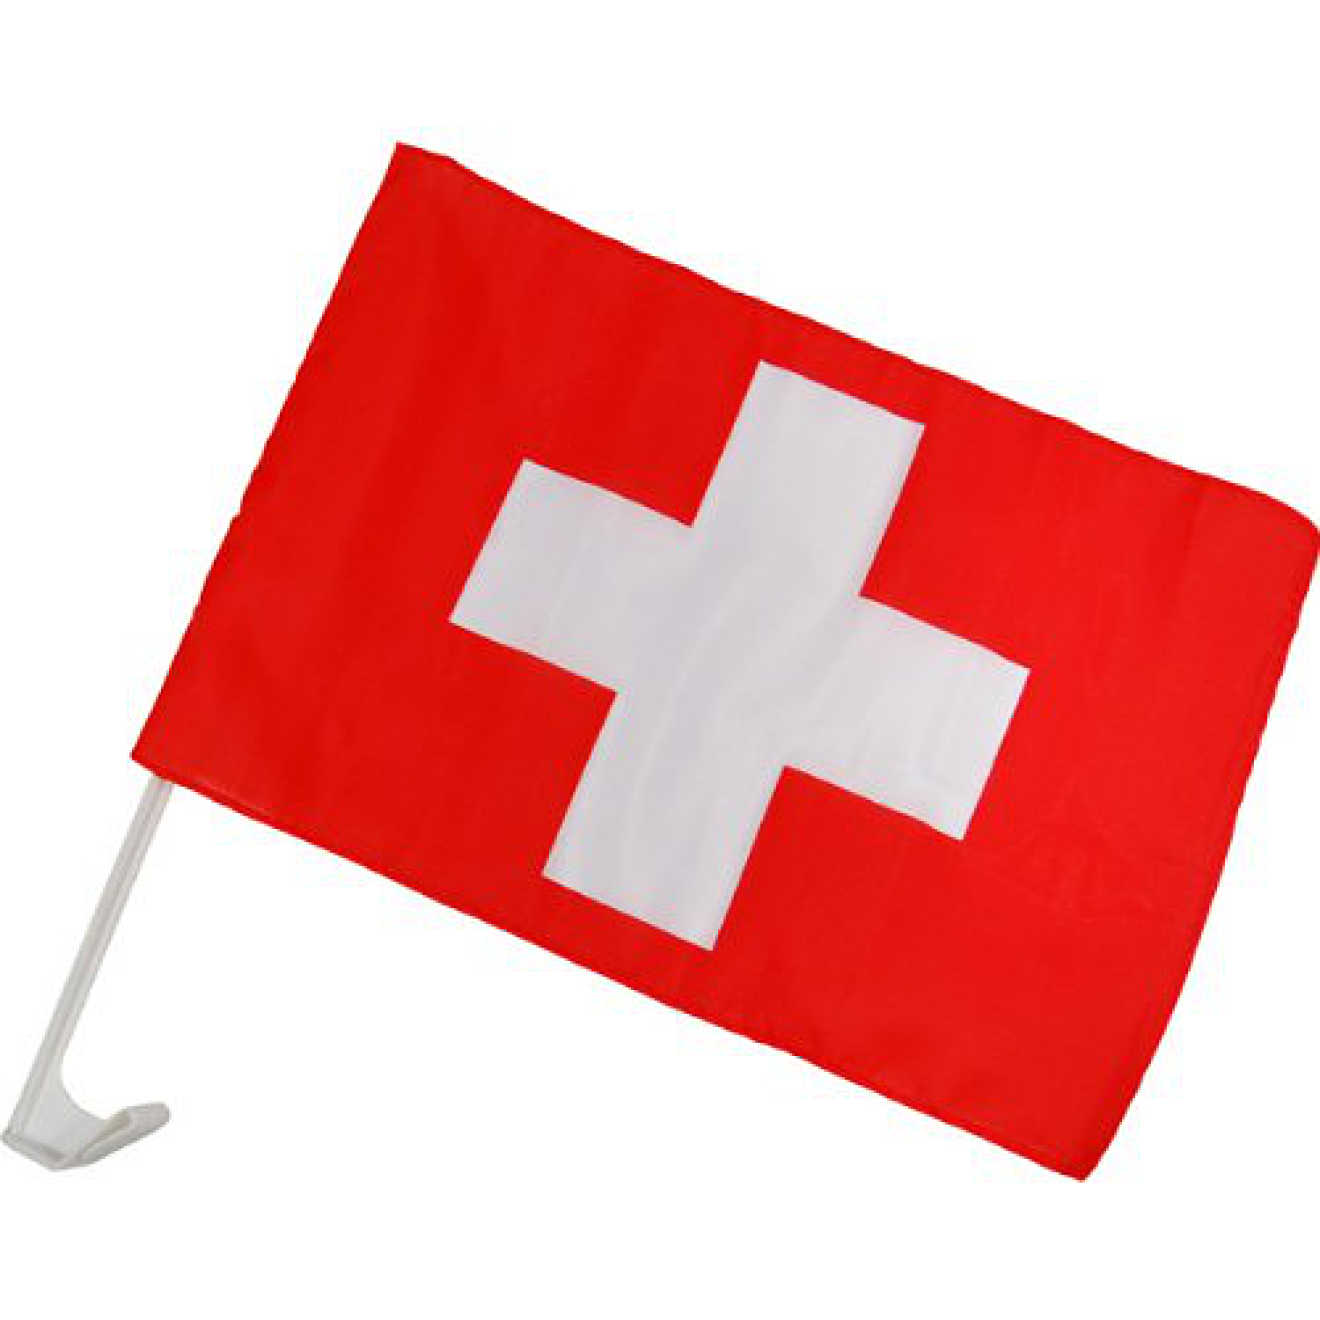 https://www.partydiscount24.de/images/thumbnail/produkte/large/Themenparty/Laenderdeko/Autofahne-Schweiz1.png